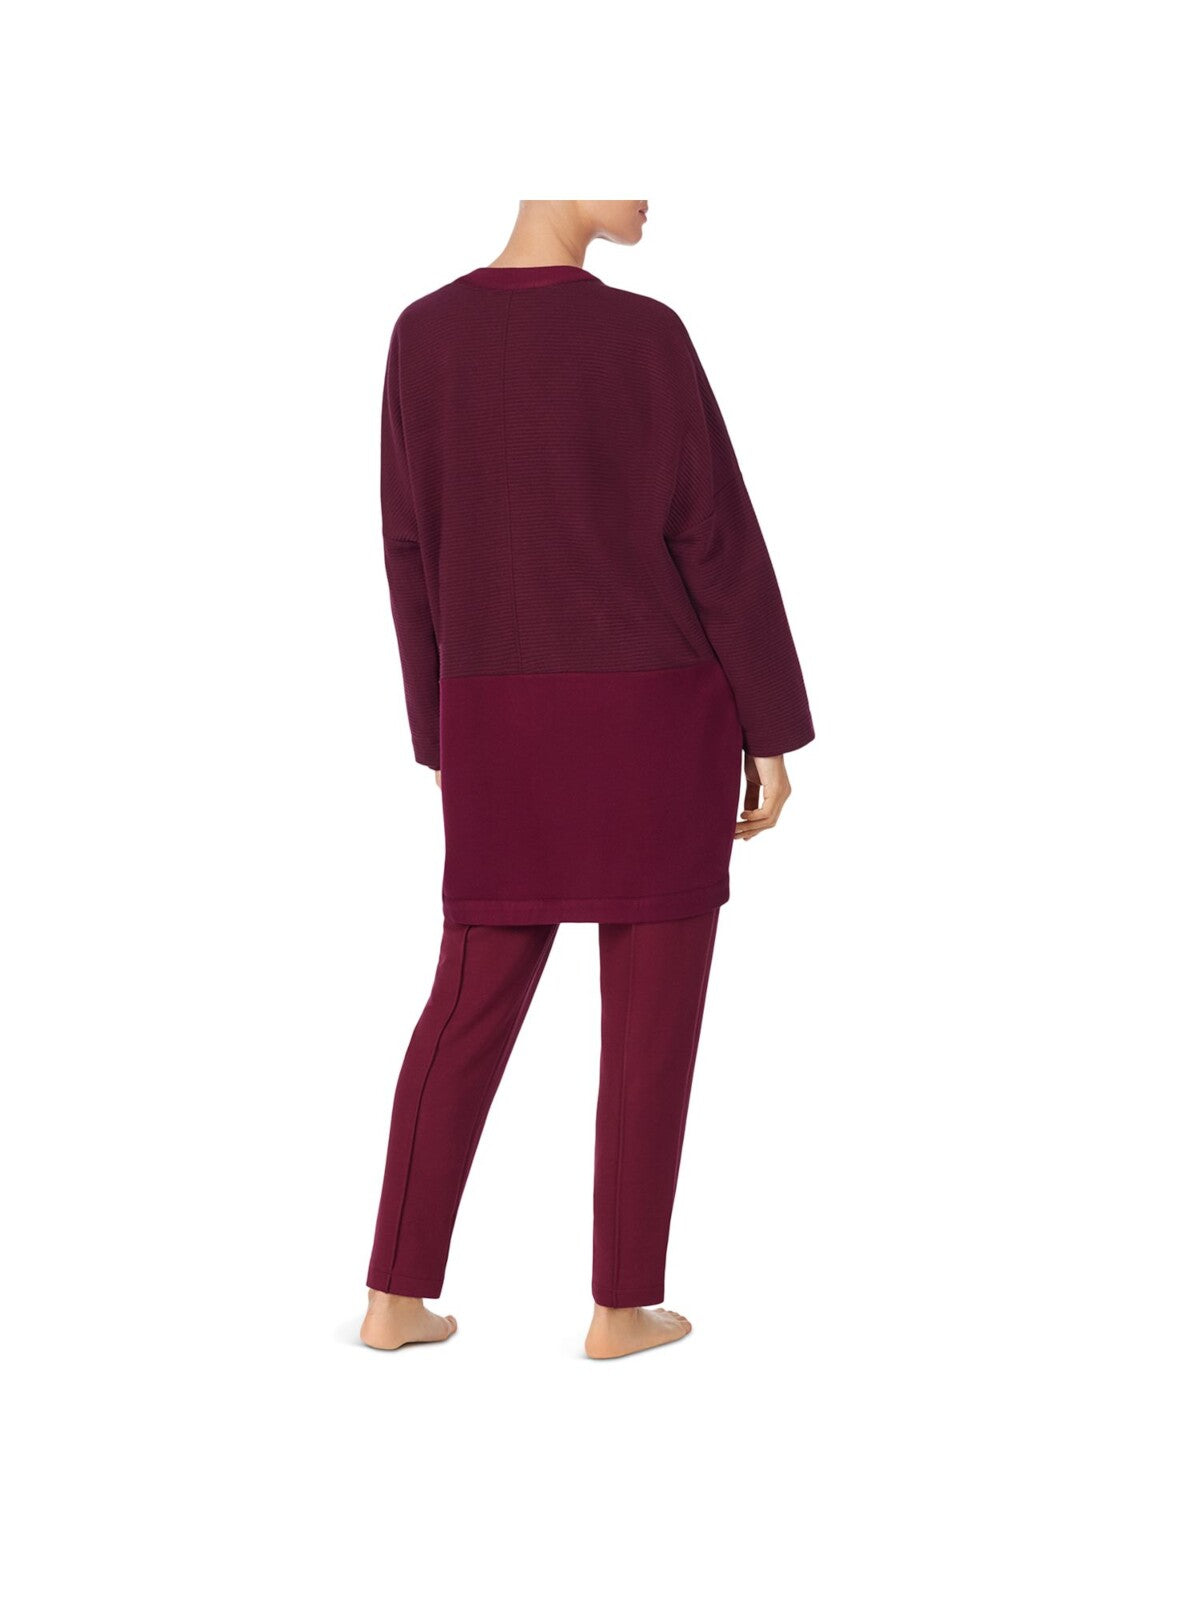 DONNA KARAN Intimates Burgundy Cardigan Sleep Shirt Pajama Top L\XL